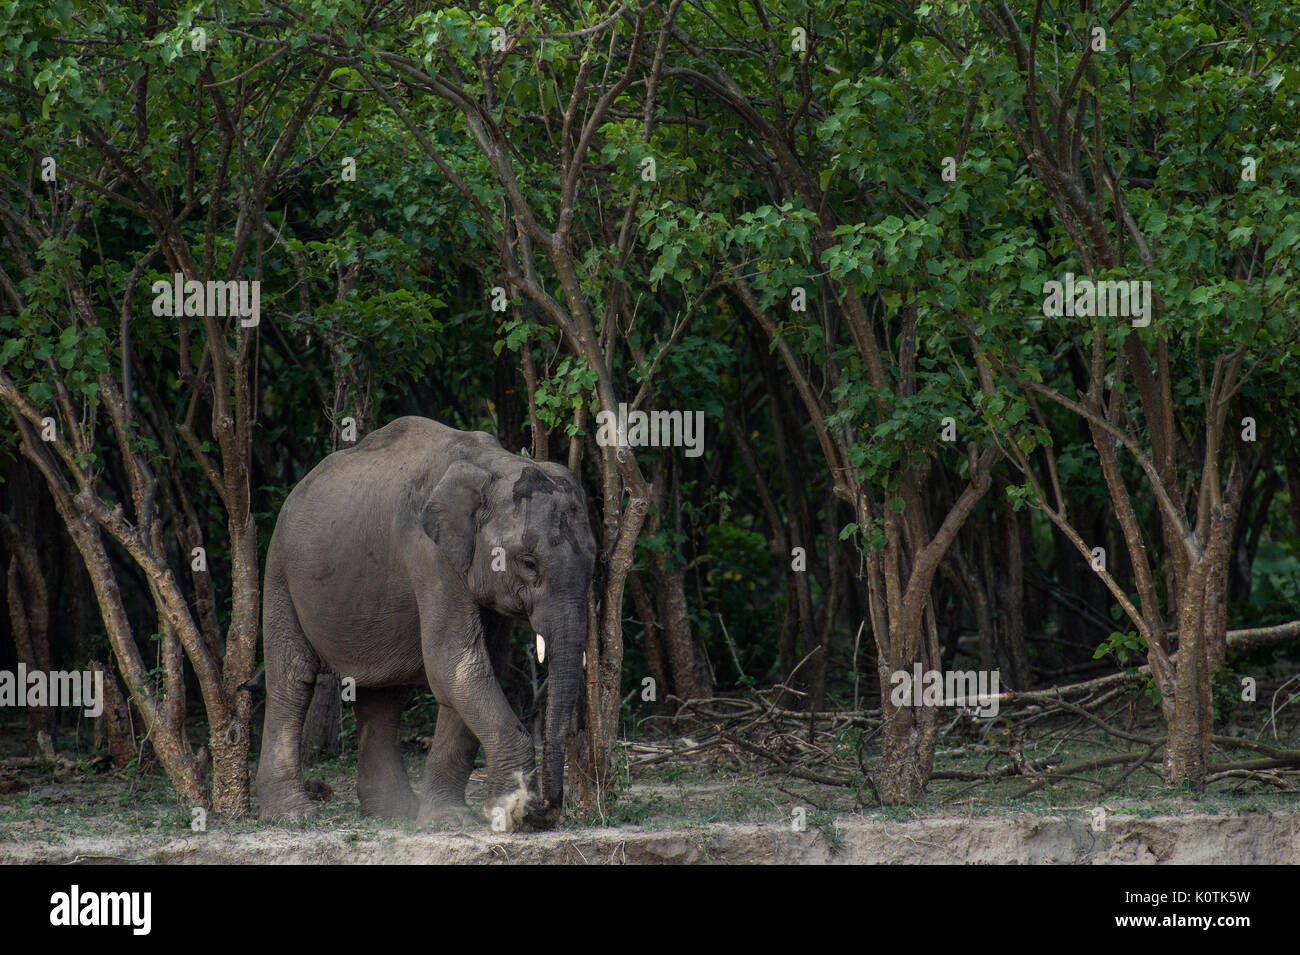 Indian Elephant, Elephas maximus indicus, Elephantidae,Rajaji National Park, India Stock Photo